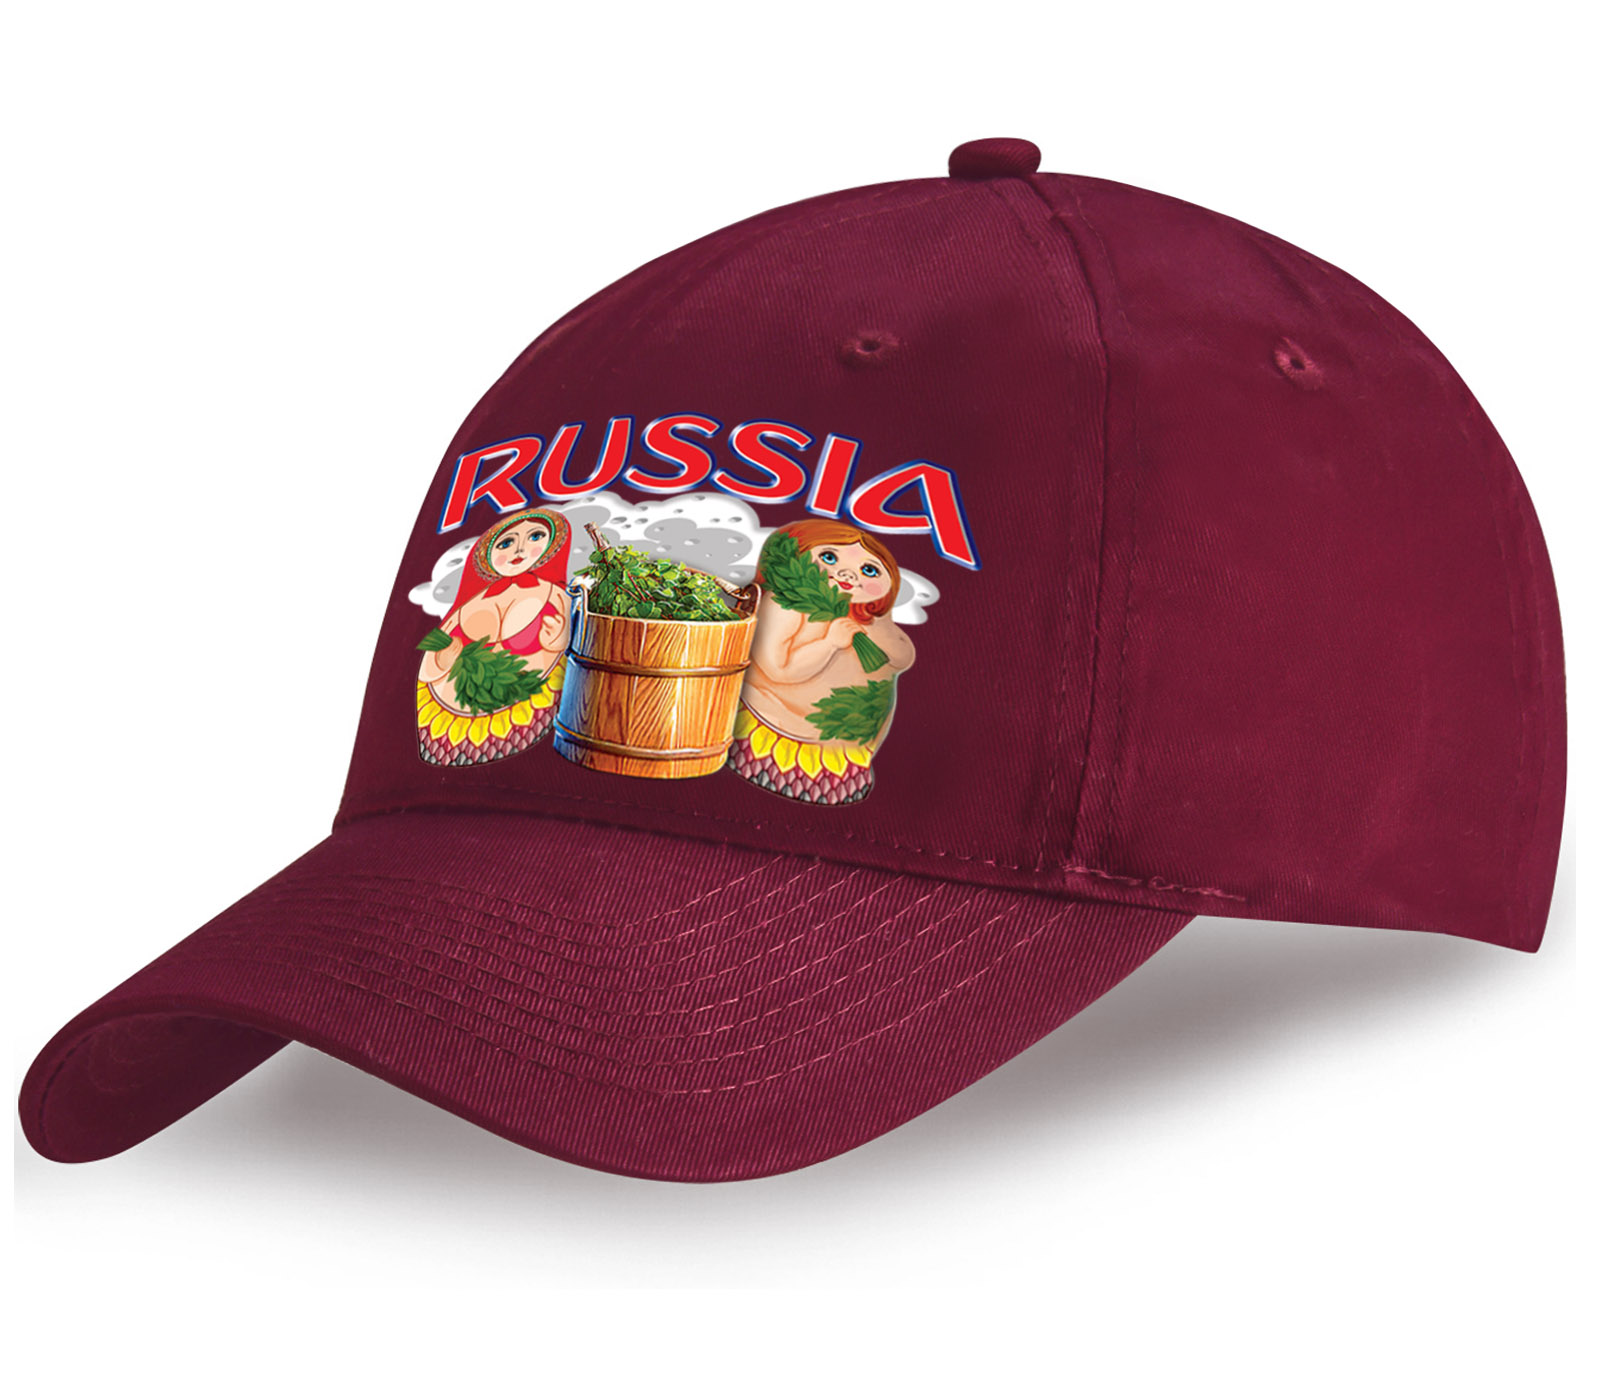 Заказать хлопковая бейсболка Russia с оригинальным принтом Матрешки в русской бане по приятной цене